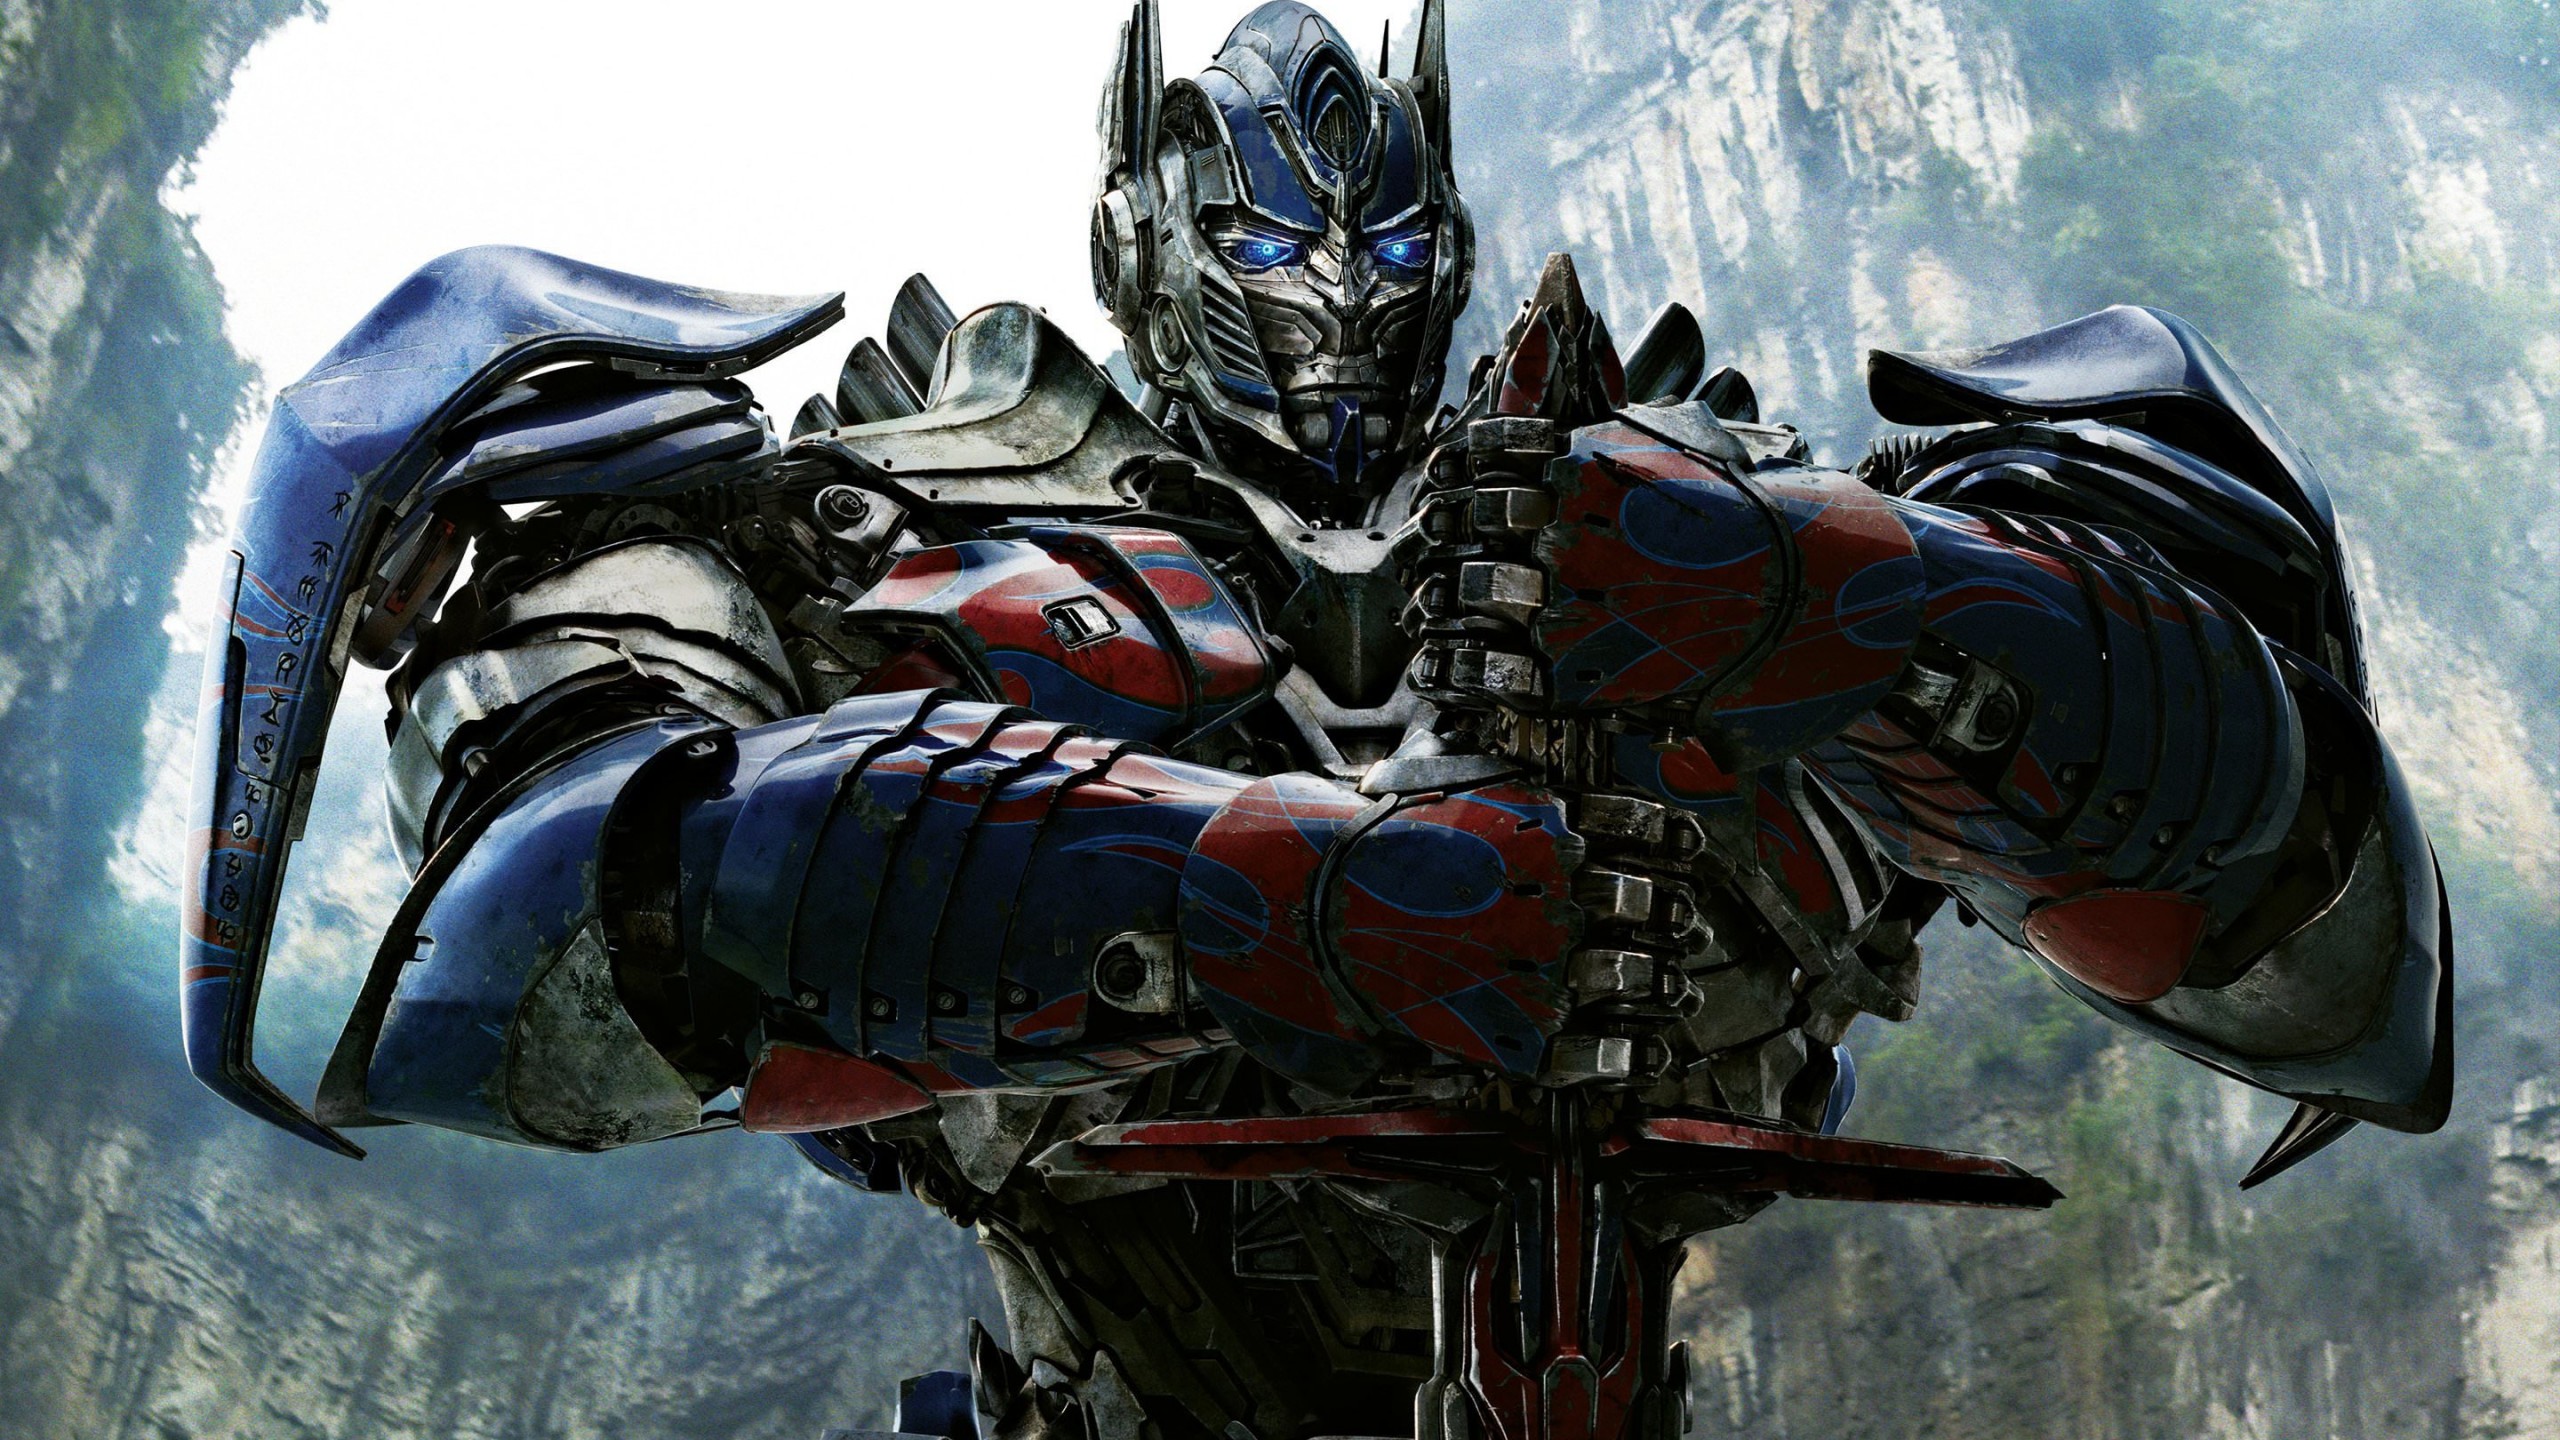 Optimus Prime - Transformers Wallpaper for Social Media YouTube Channel Art